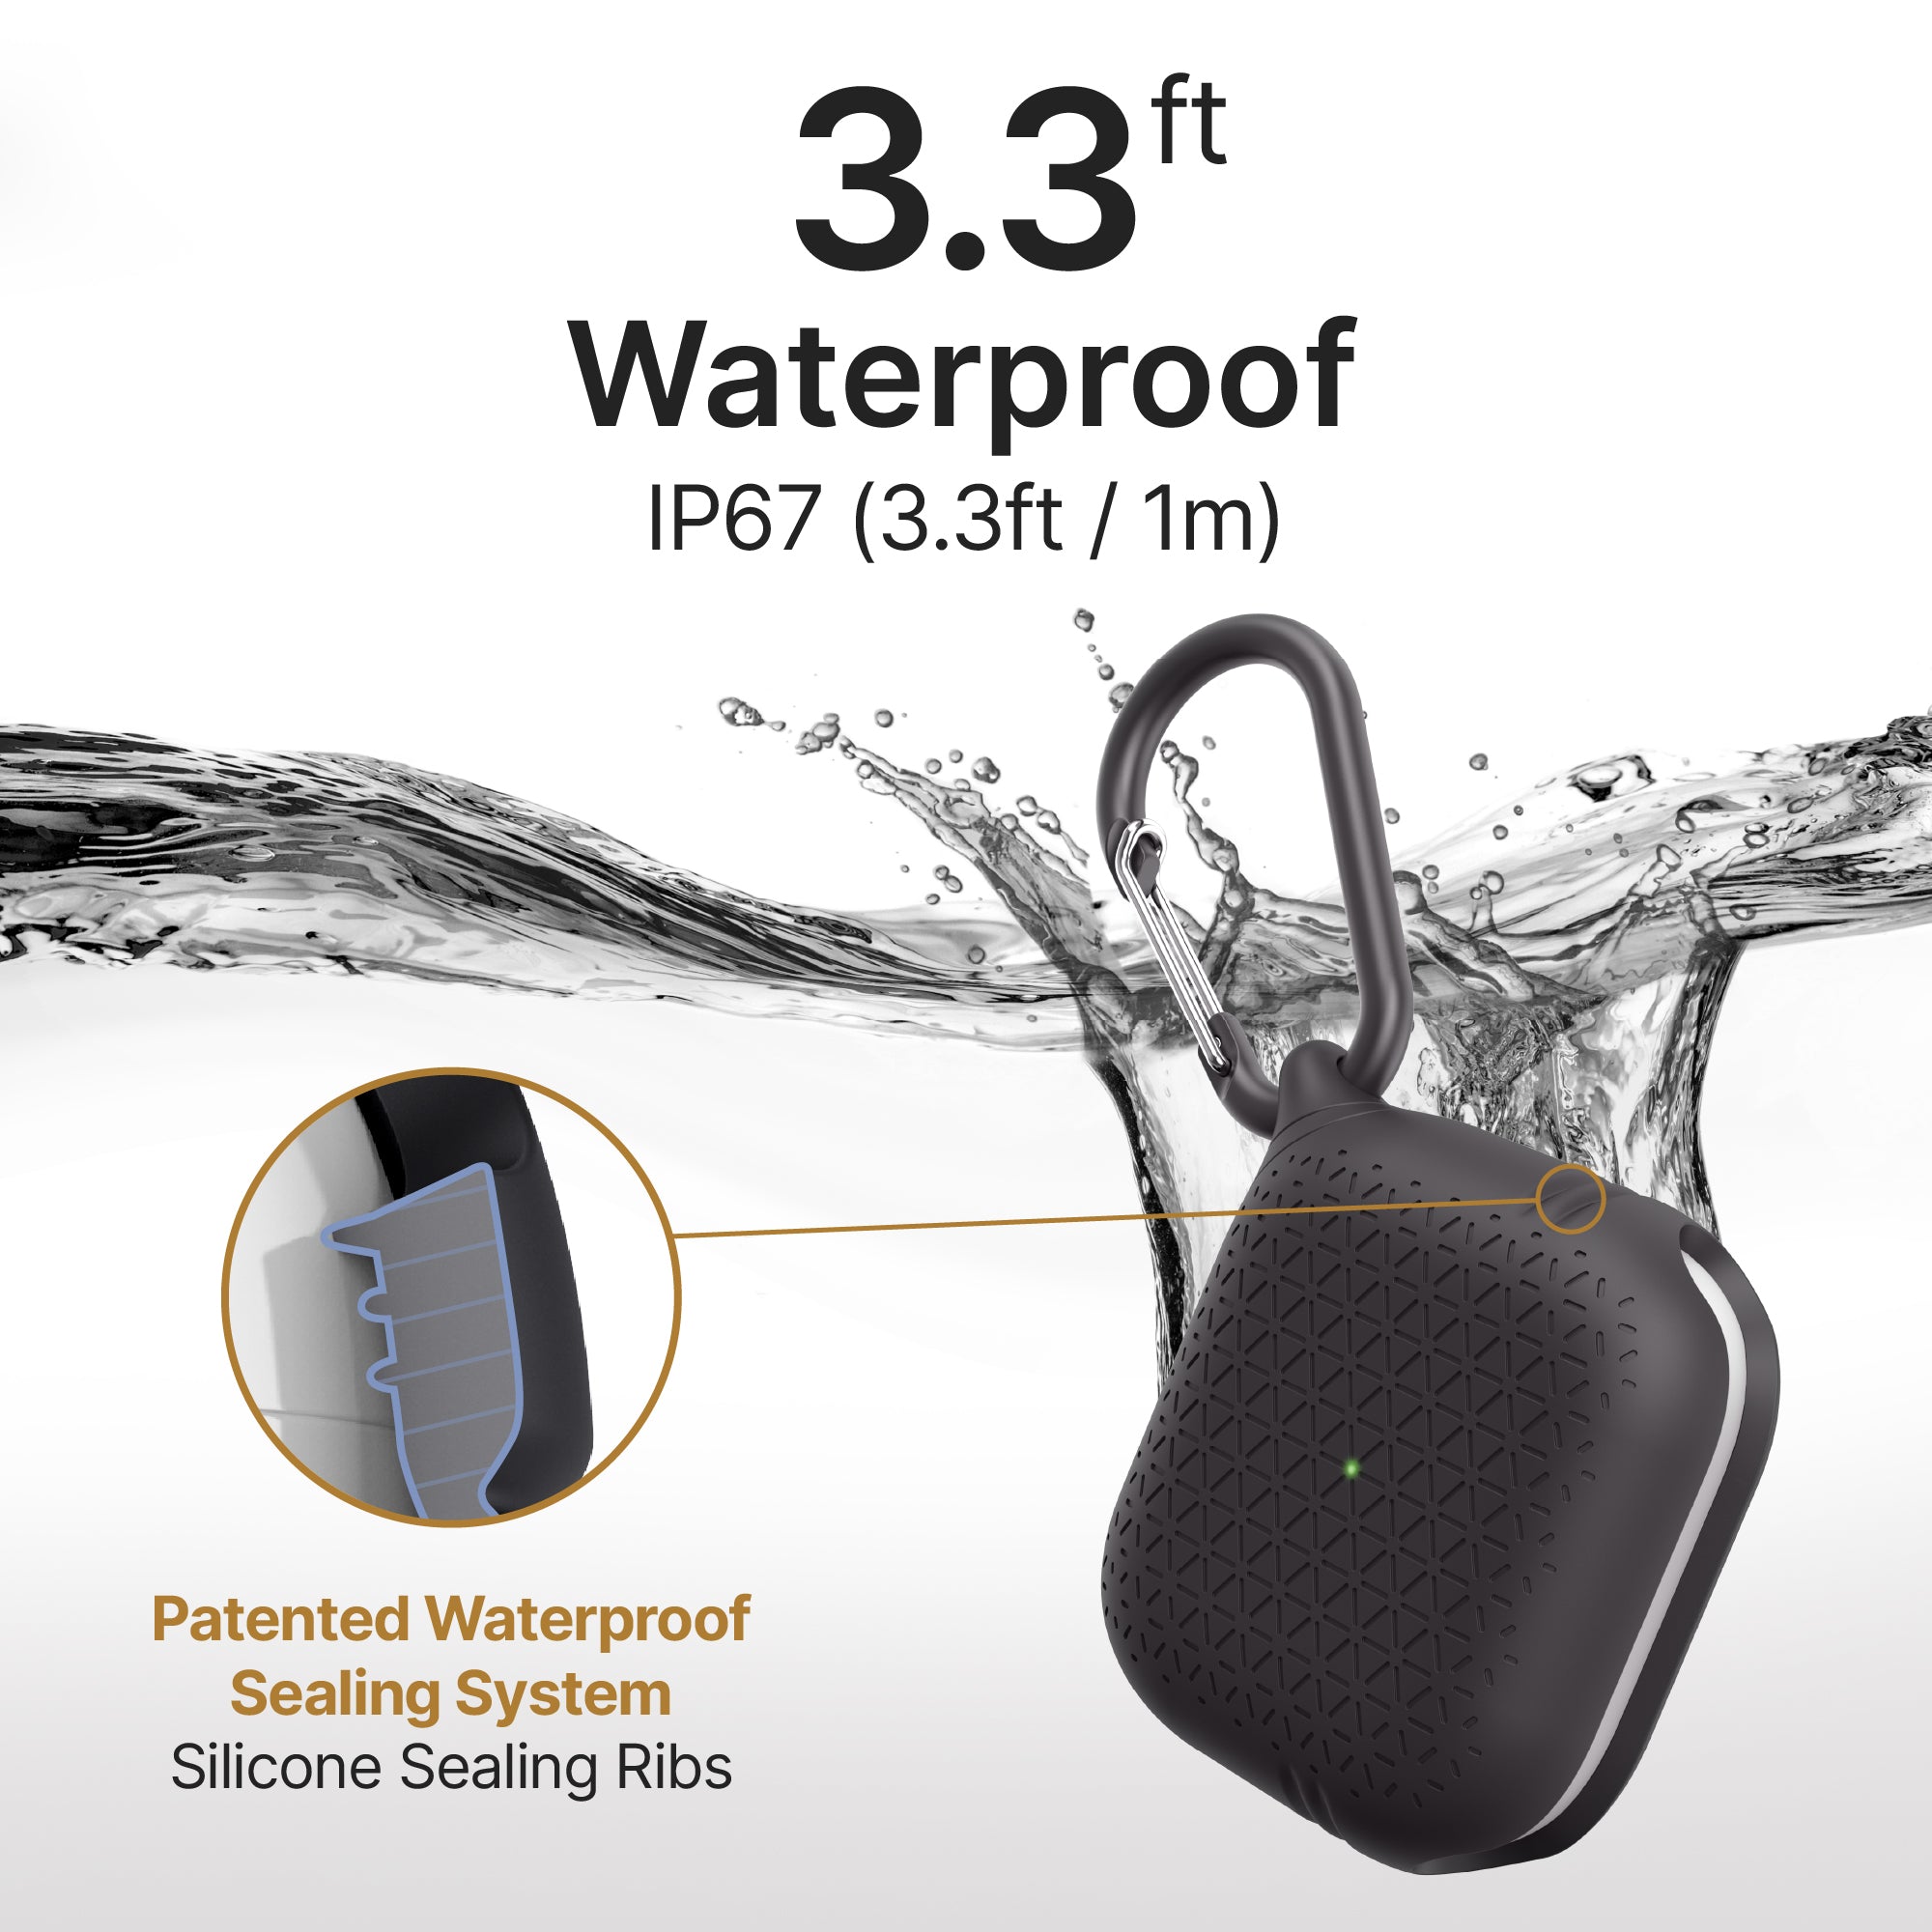 AirPods (Gen 3) - Waterproof Case + Carabiner